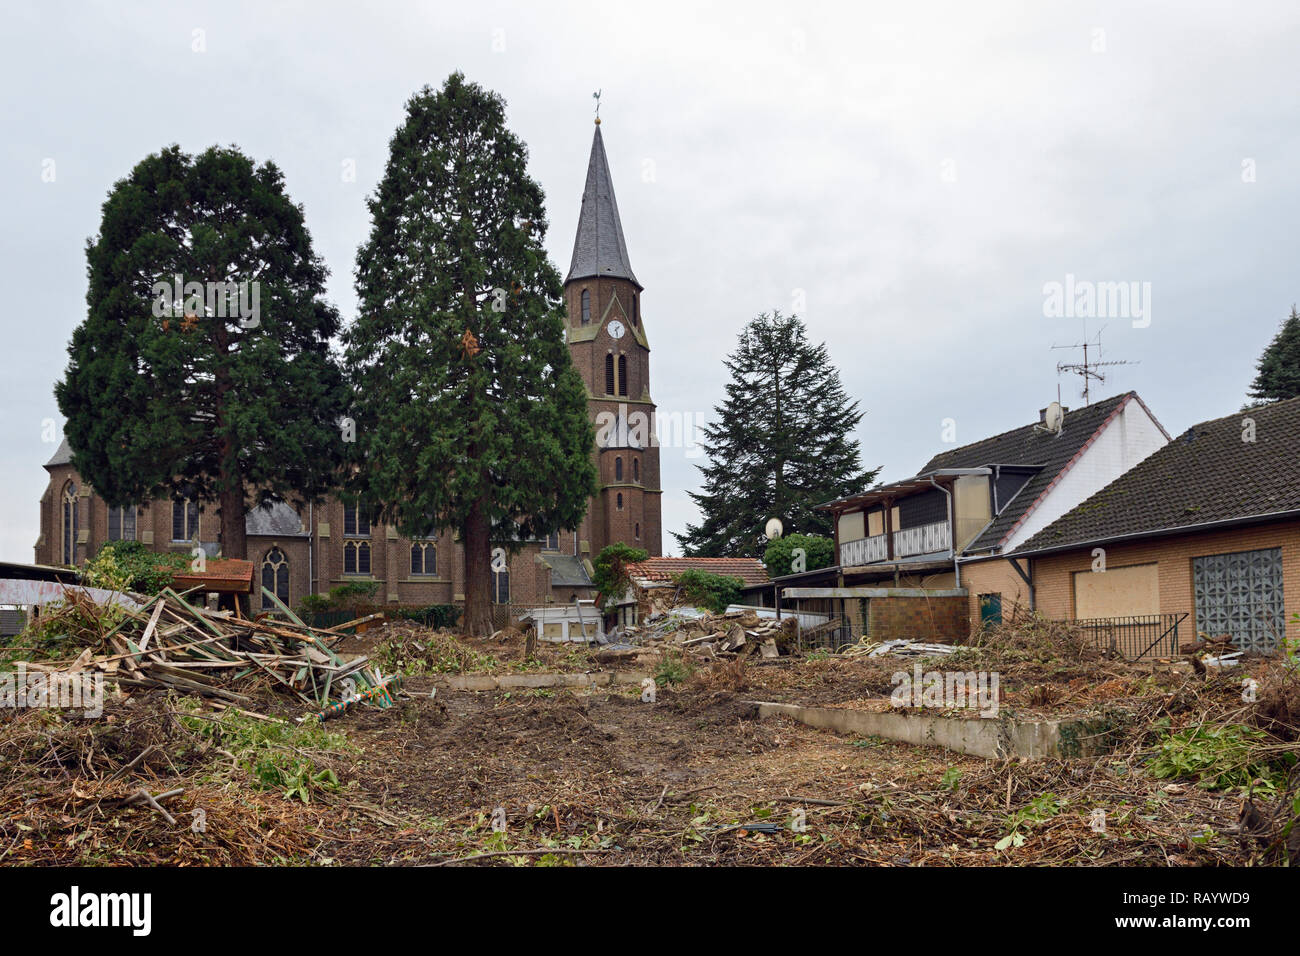 En décembre 2018, Manheim, Kerpen-Manheim, Nordrhein-Westfalen, Allemagne - Démolition de l'église Saint Albertus et maisons abandonnées Banque D'Images